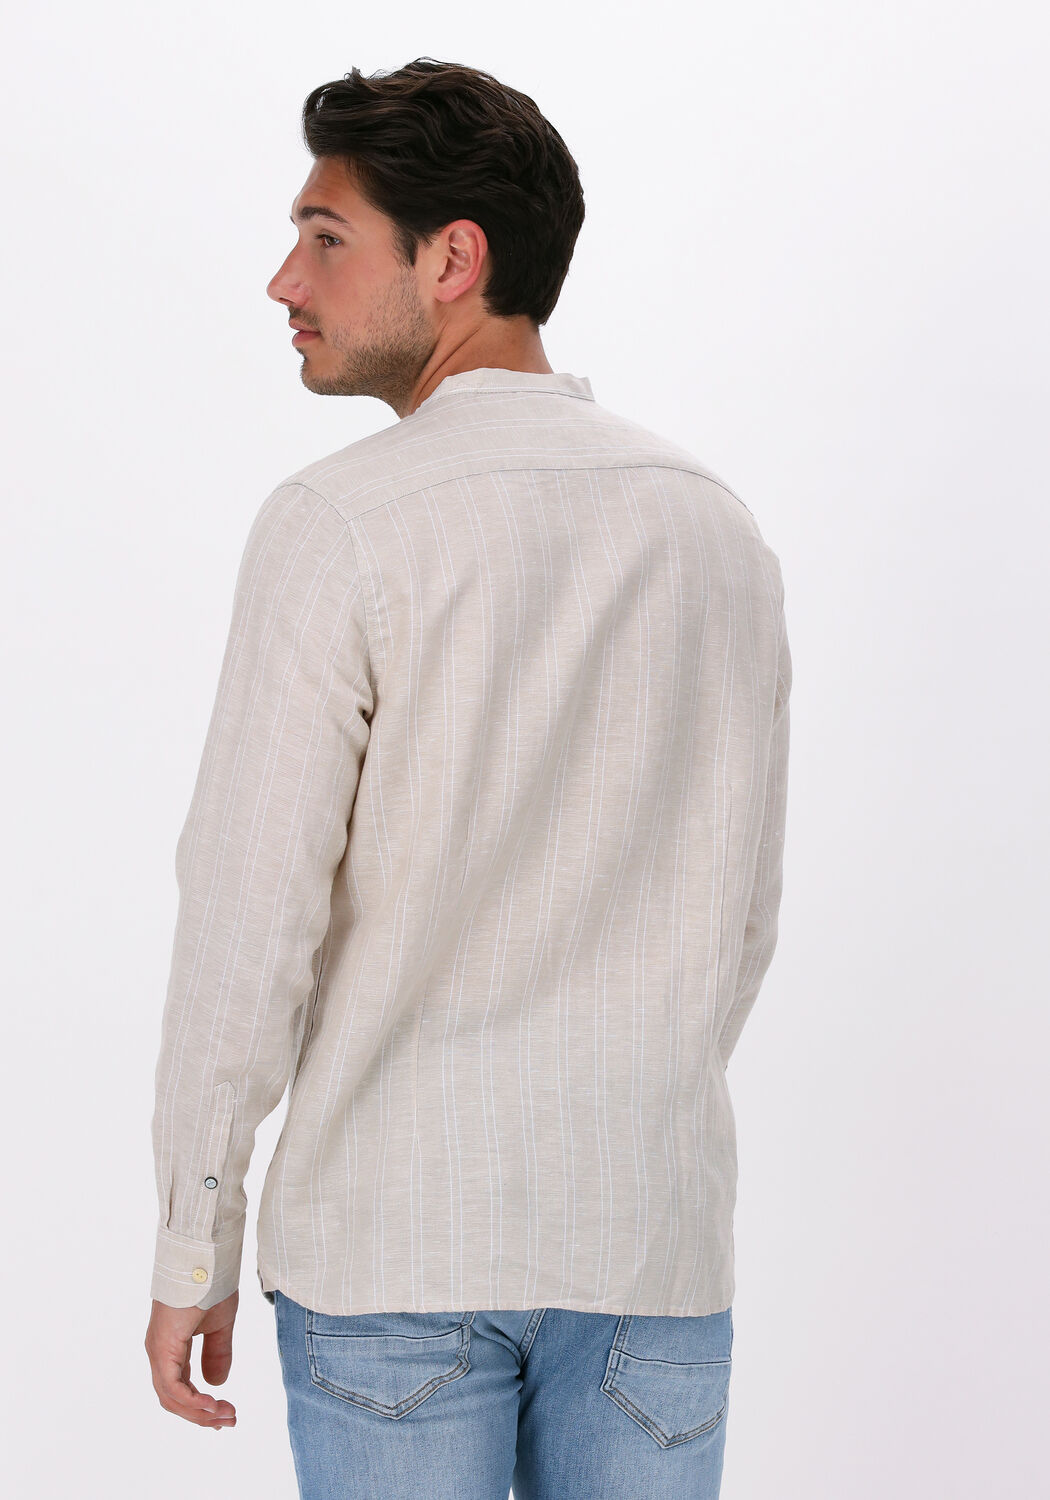 120% Lino Linnen blouse wit zakelijke stijl Mode Blouses Linnen blouses 